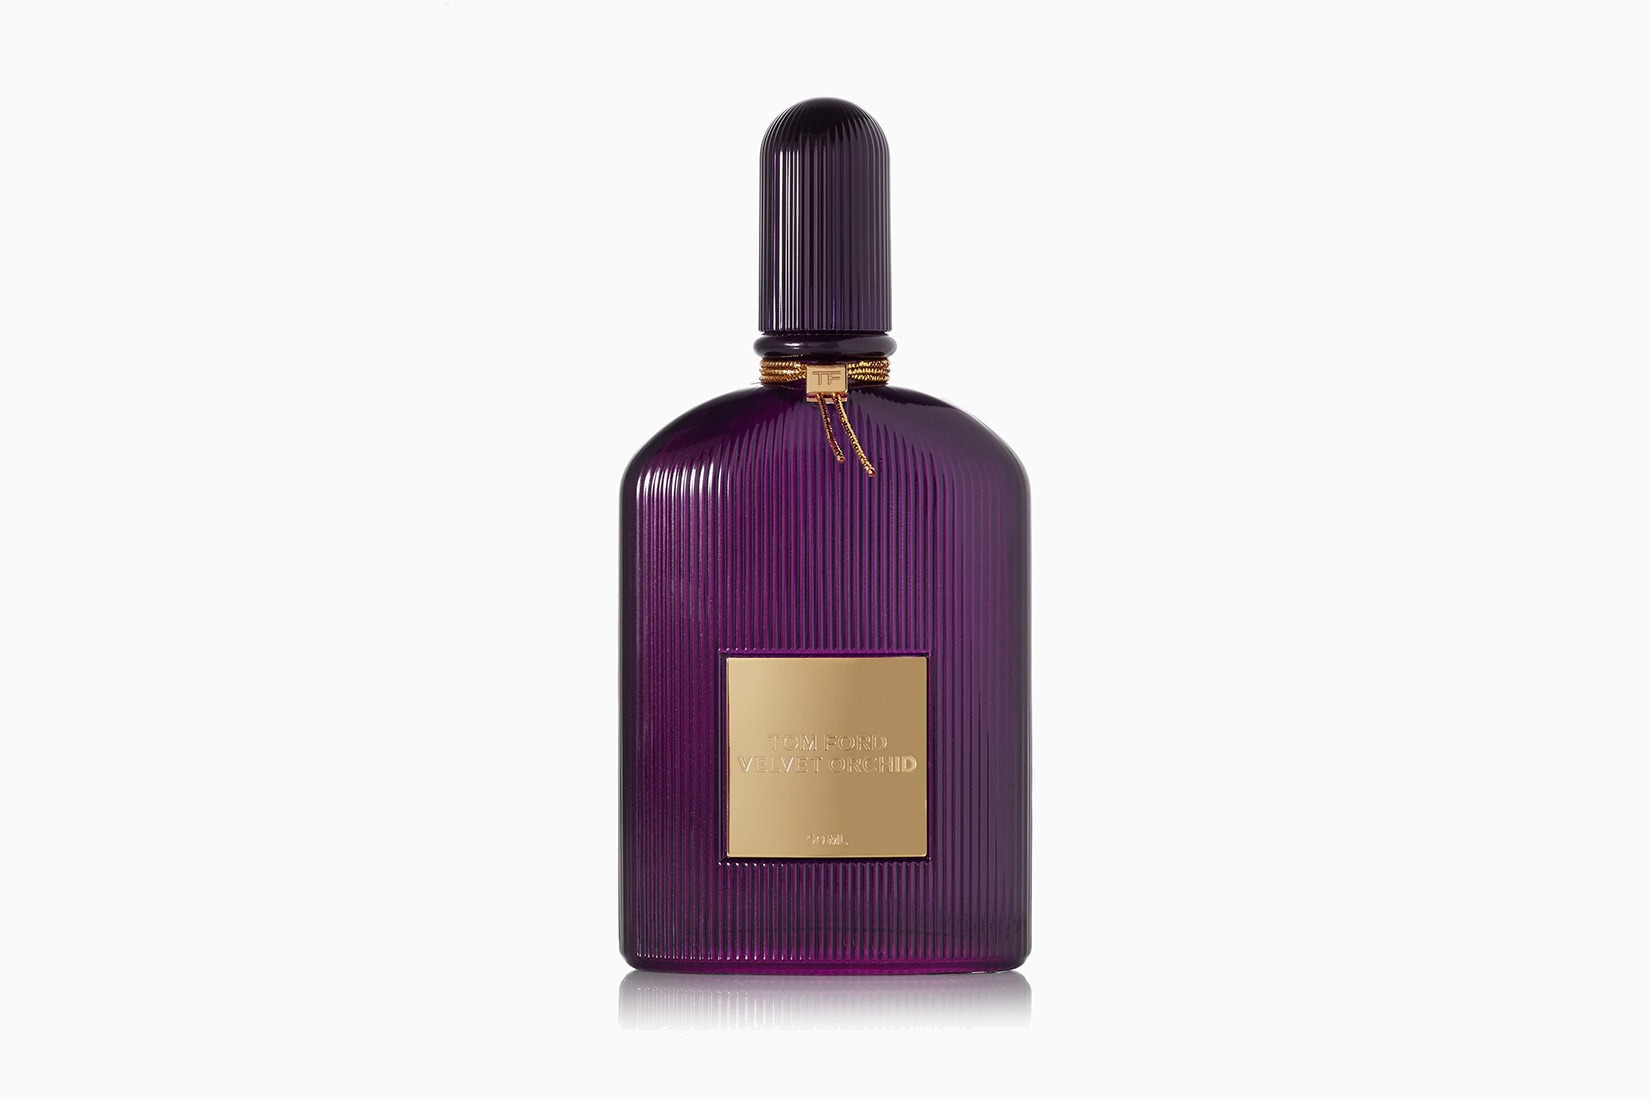 ladies perfume purple bottle